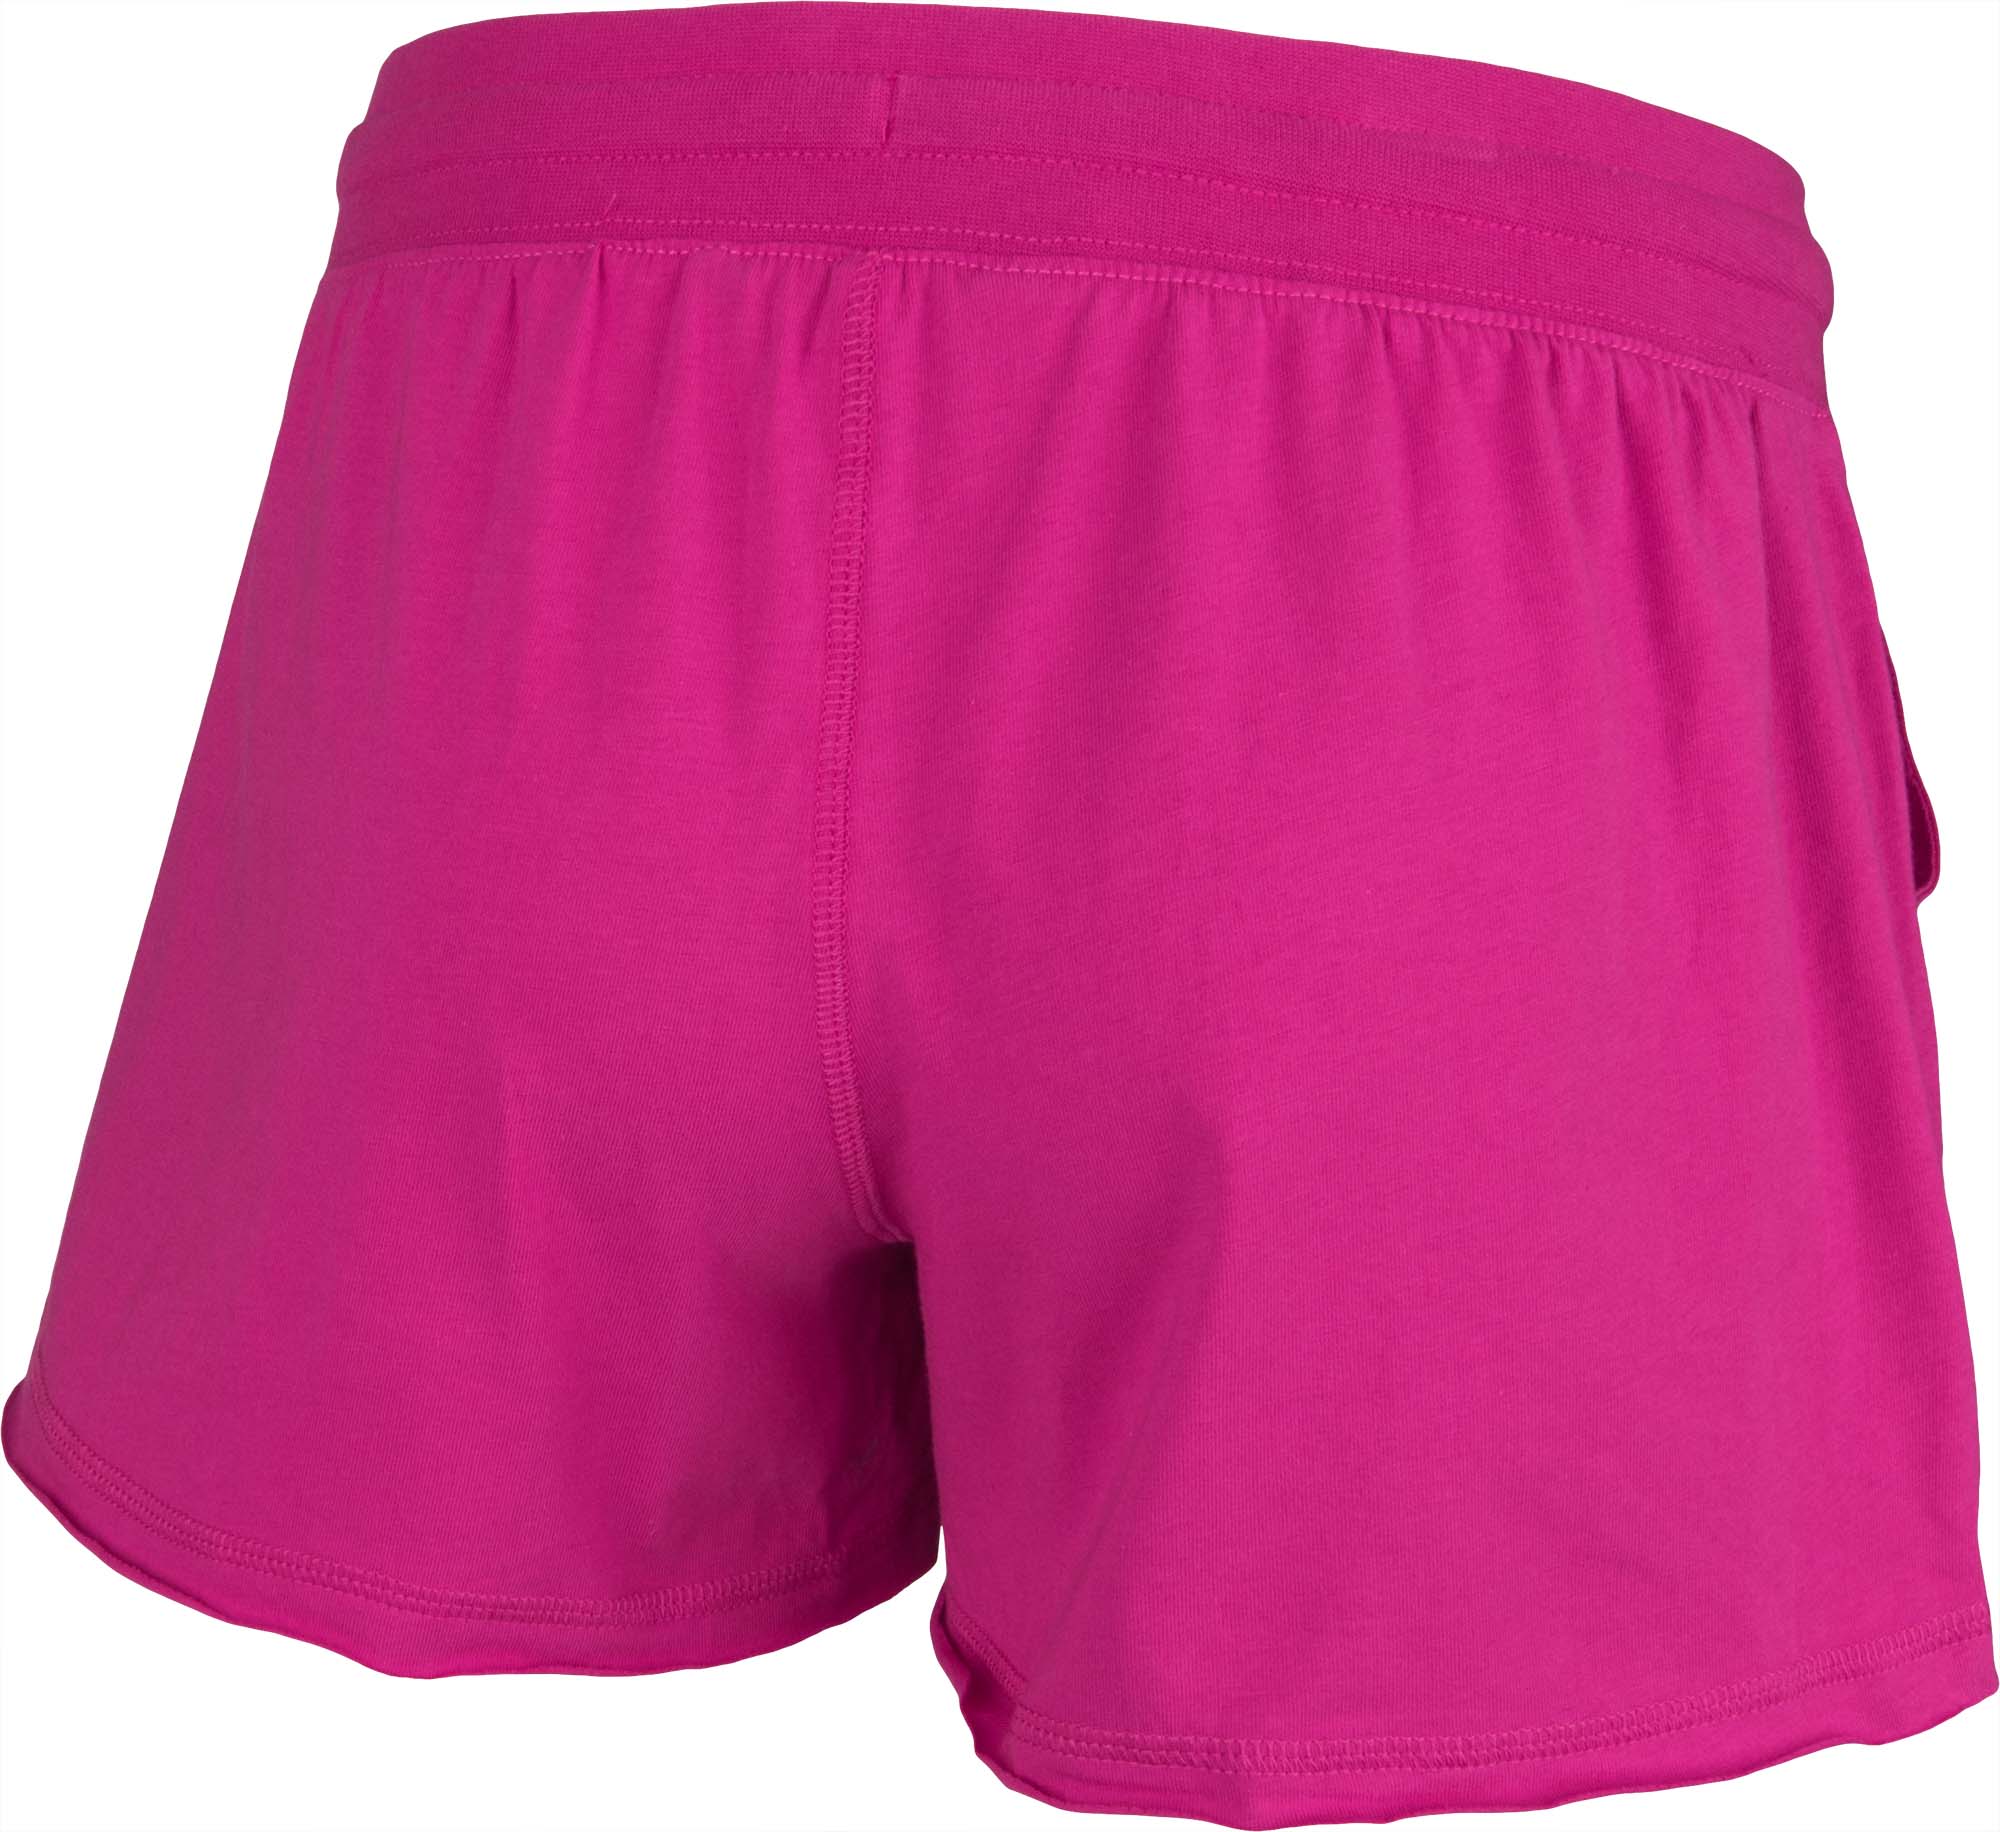 Women’s shorts